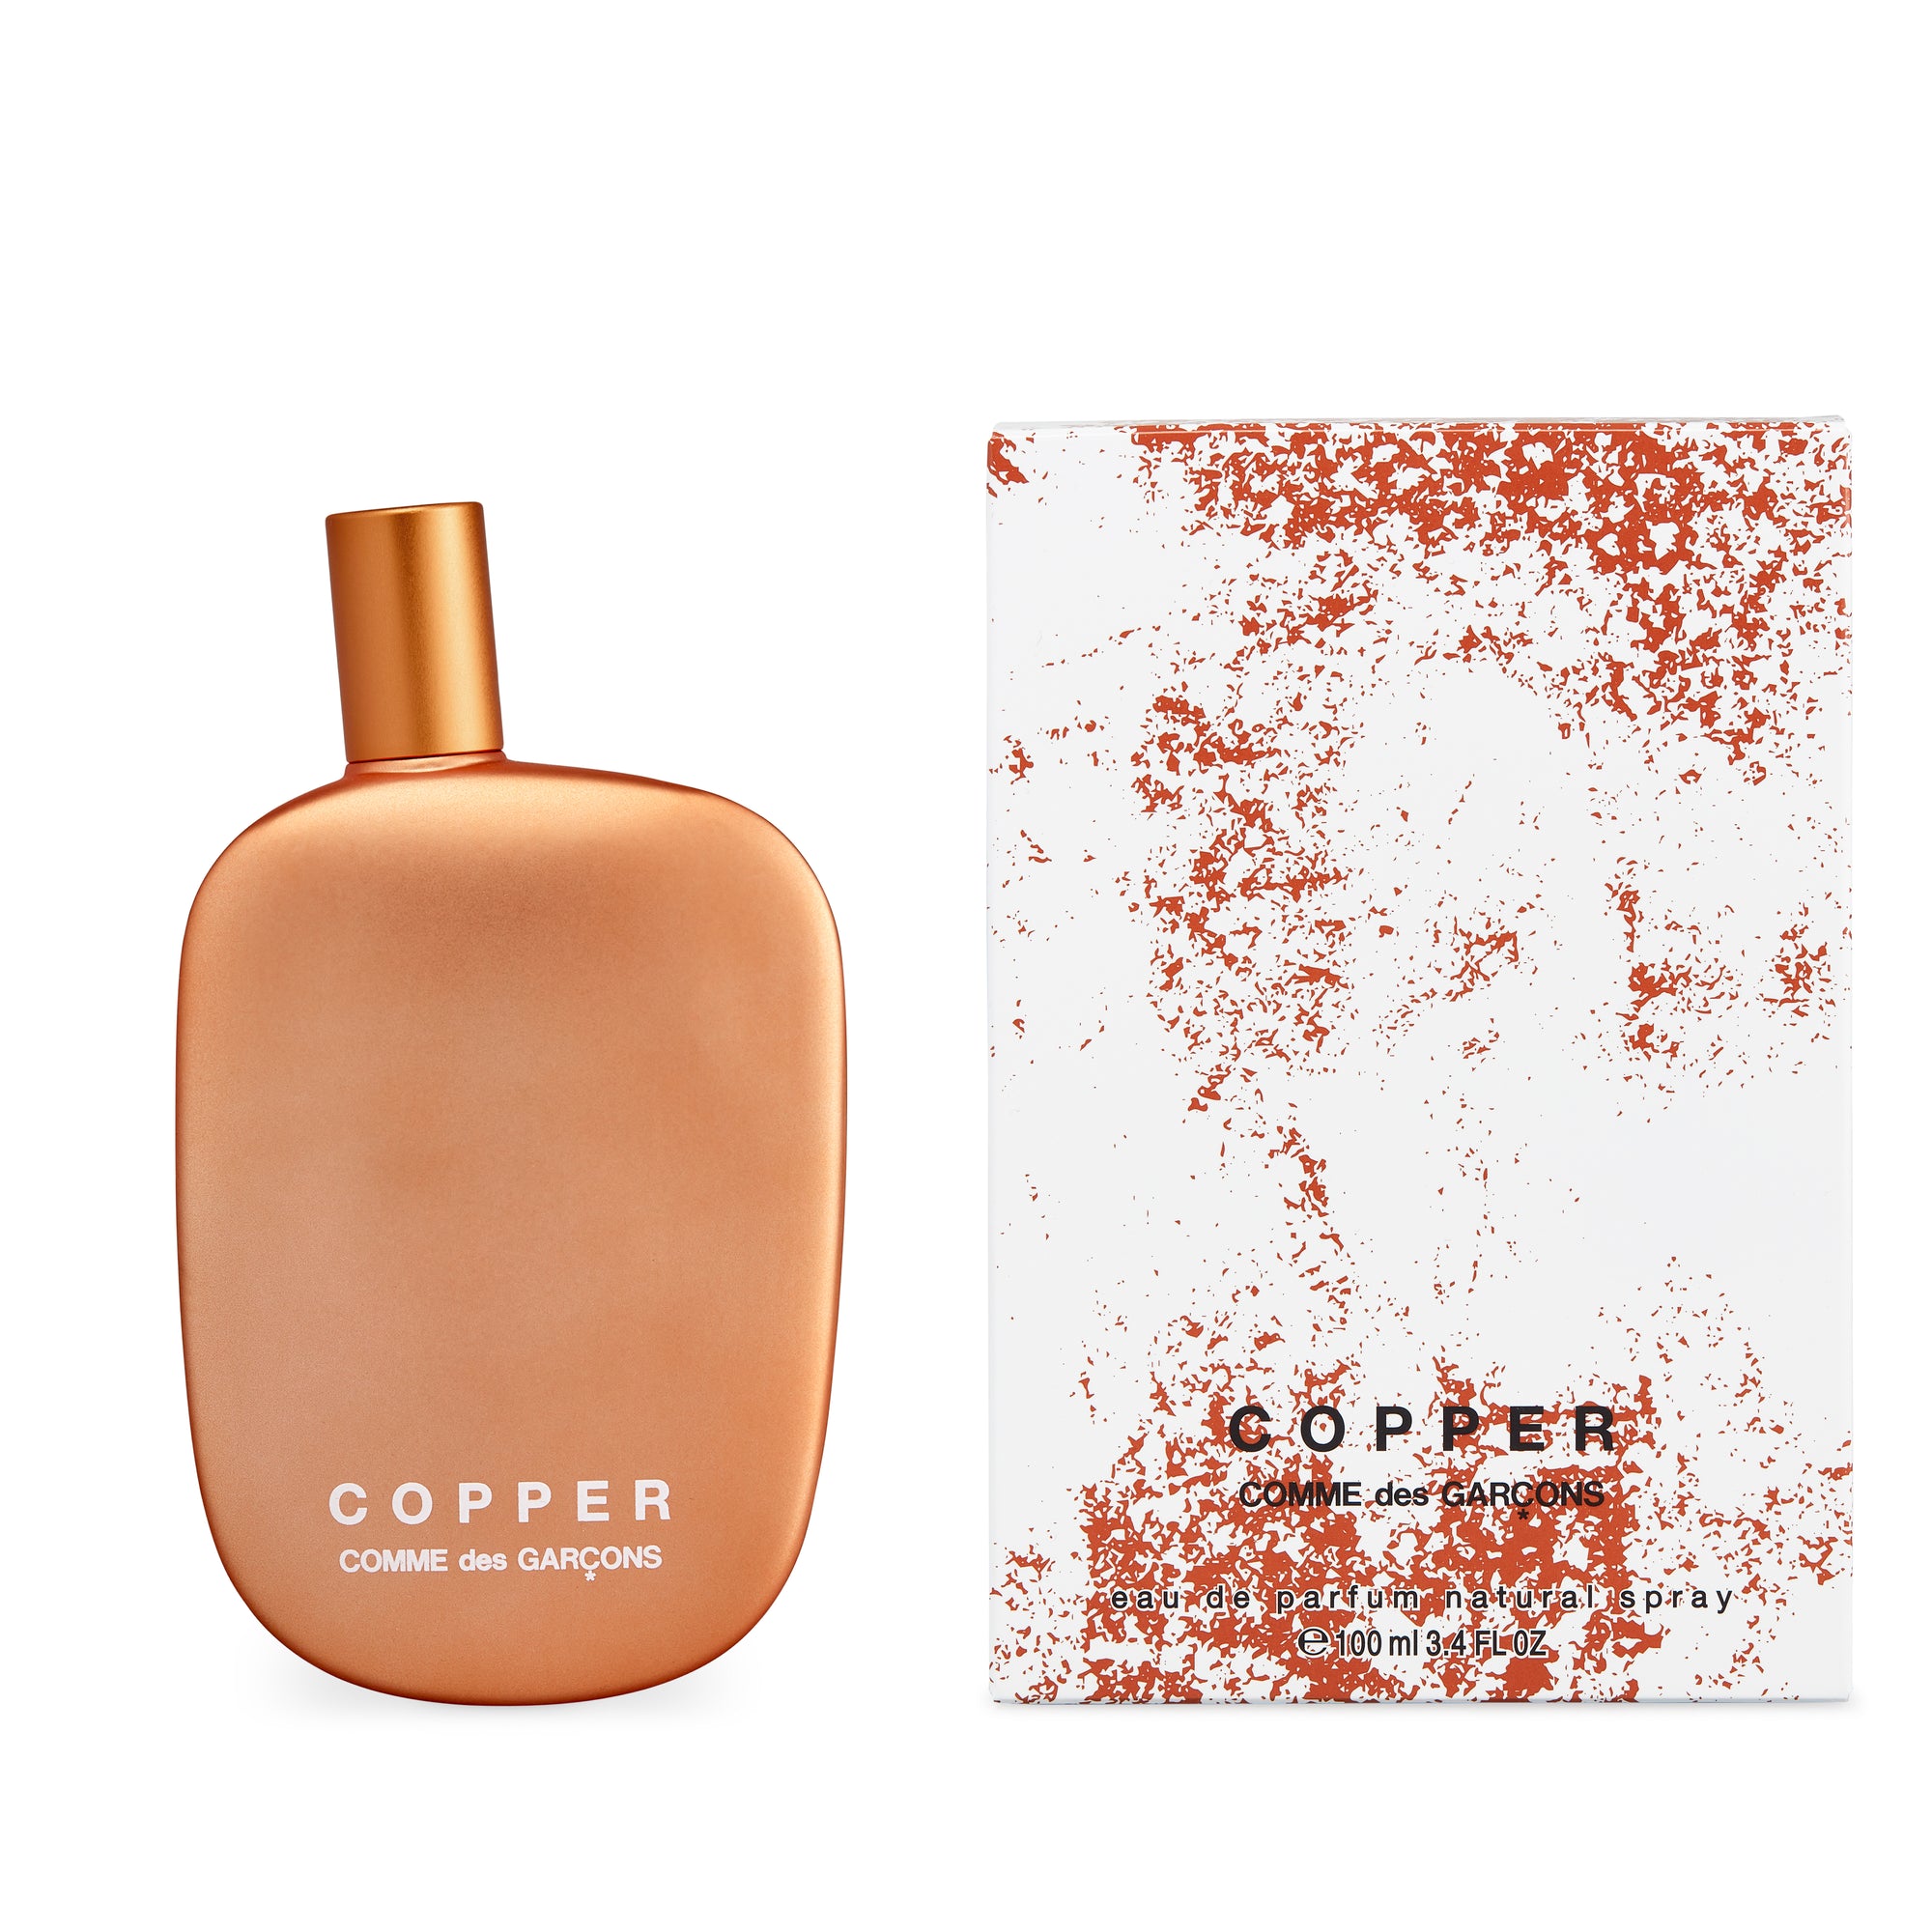 CDG Parfum - Copper Eau de Parfum - (100ml Natural Spray) view 2